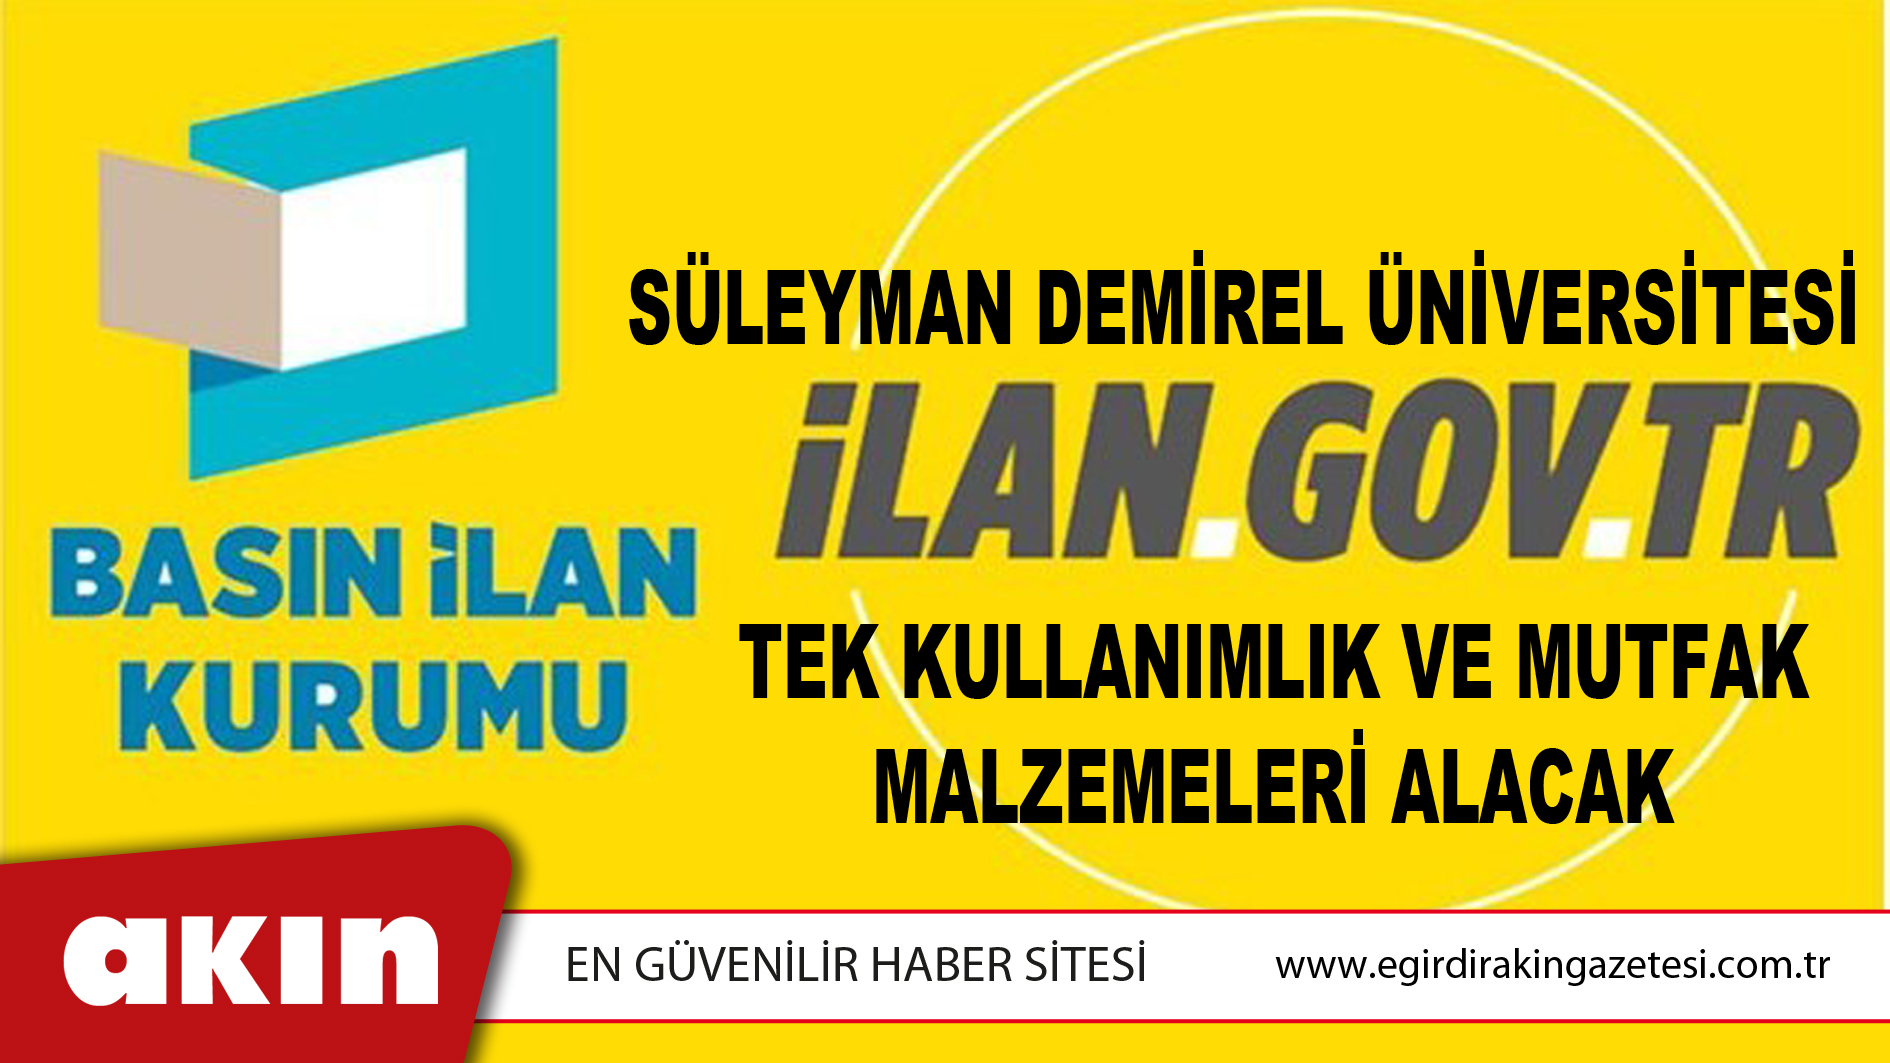 Süleyman Demirel Üniversitesi Tek Kullanımlık Ve Mutfak Malzemeleri Alacak